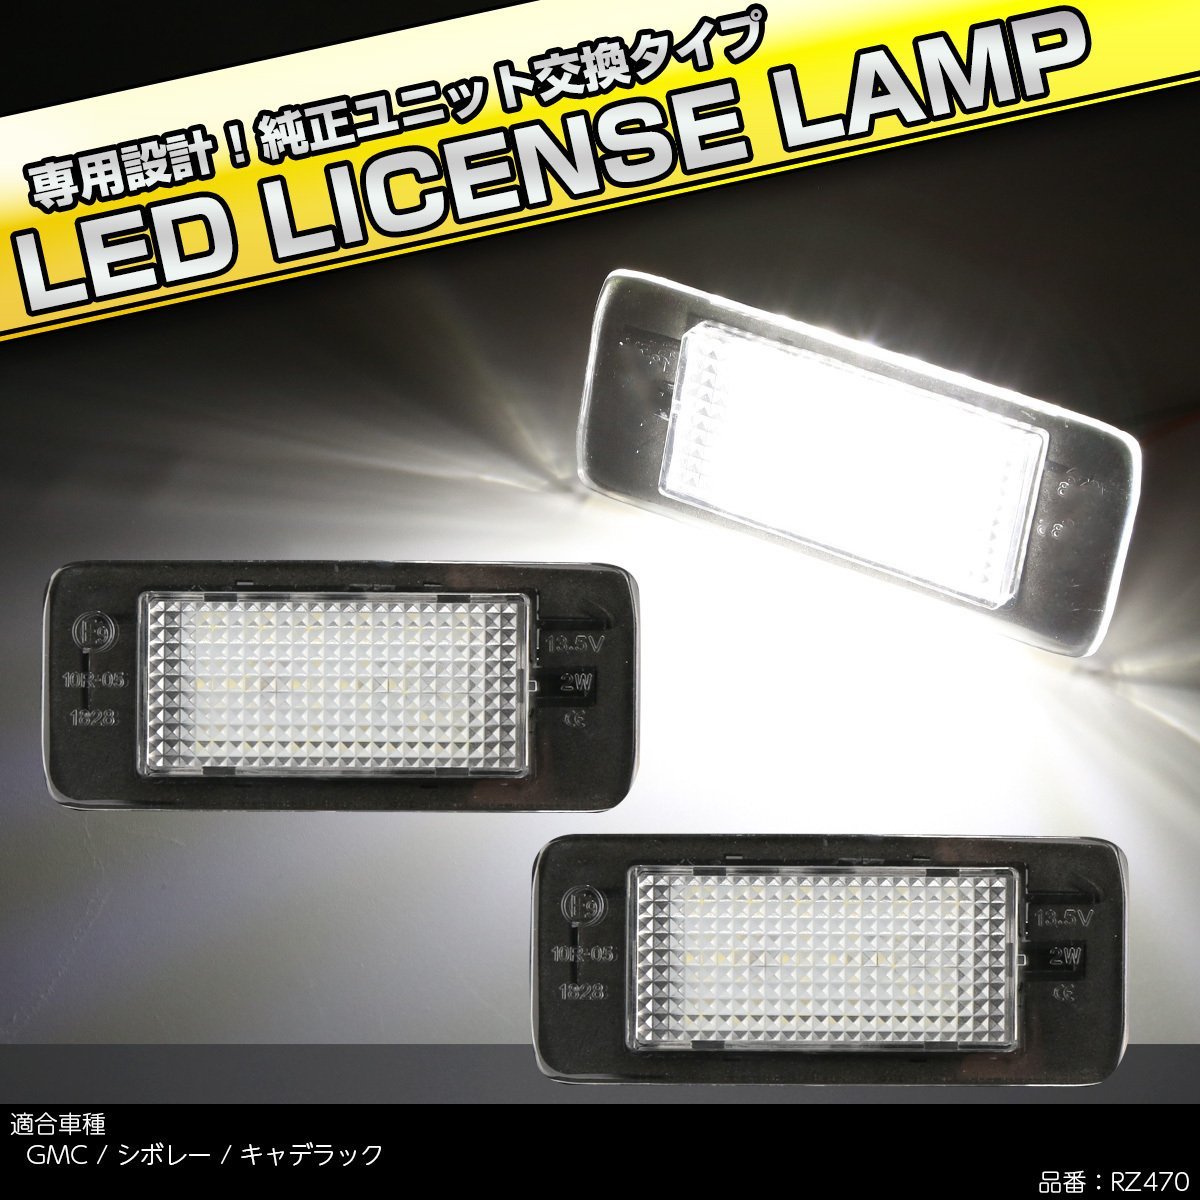 LED ライセンスランプ シボレー サバーバン タホ GMC ユーコン XL 2015- ナンバー灯 6500K ホワイト キャンセラー付き RZ470_画像1